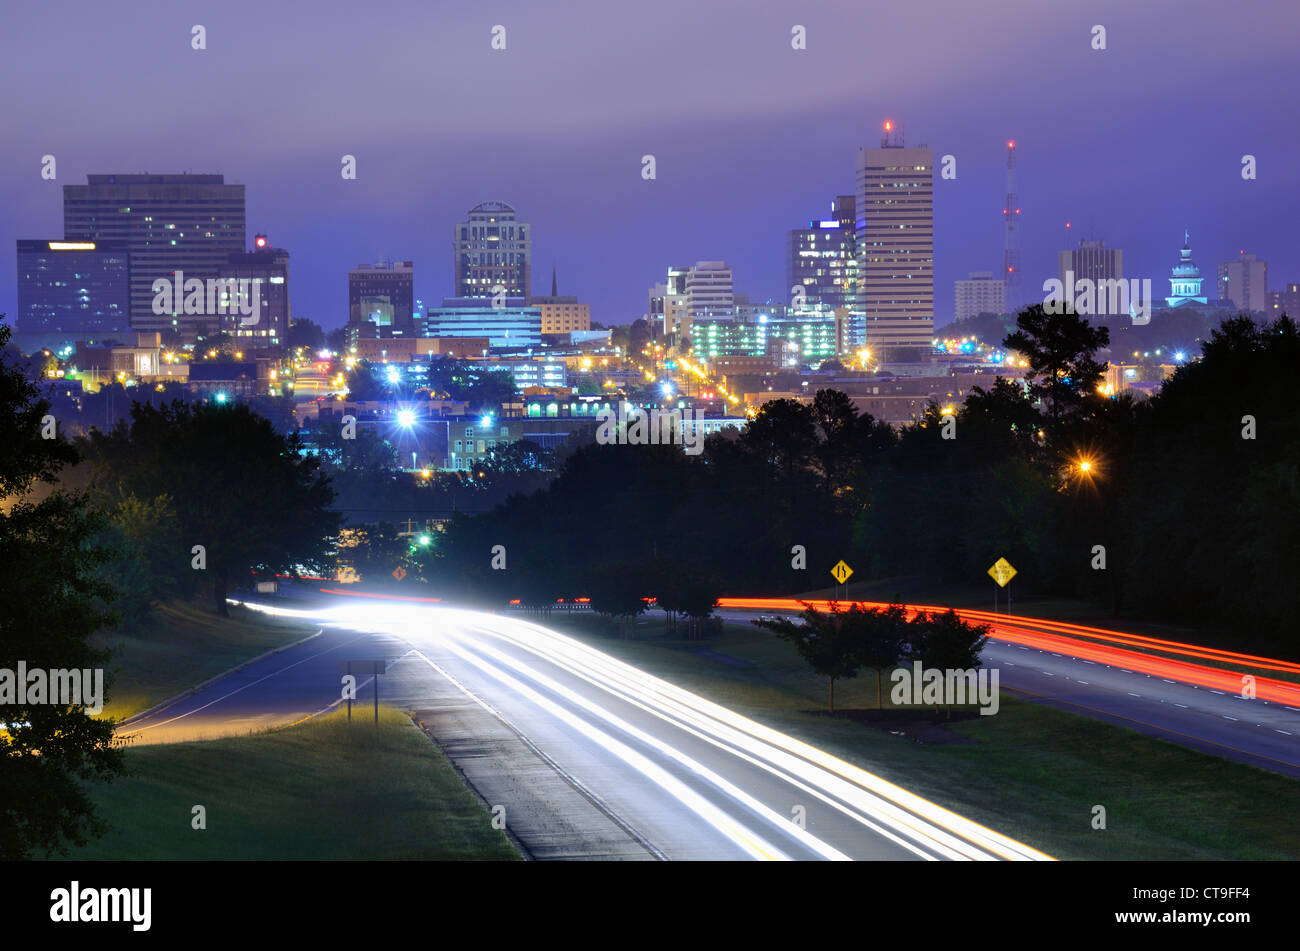 Skyline der Innenstadt von Columbia, South Carolina von oben Jarvis Kaplan Blvd. Stockfoto